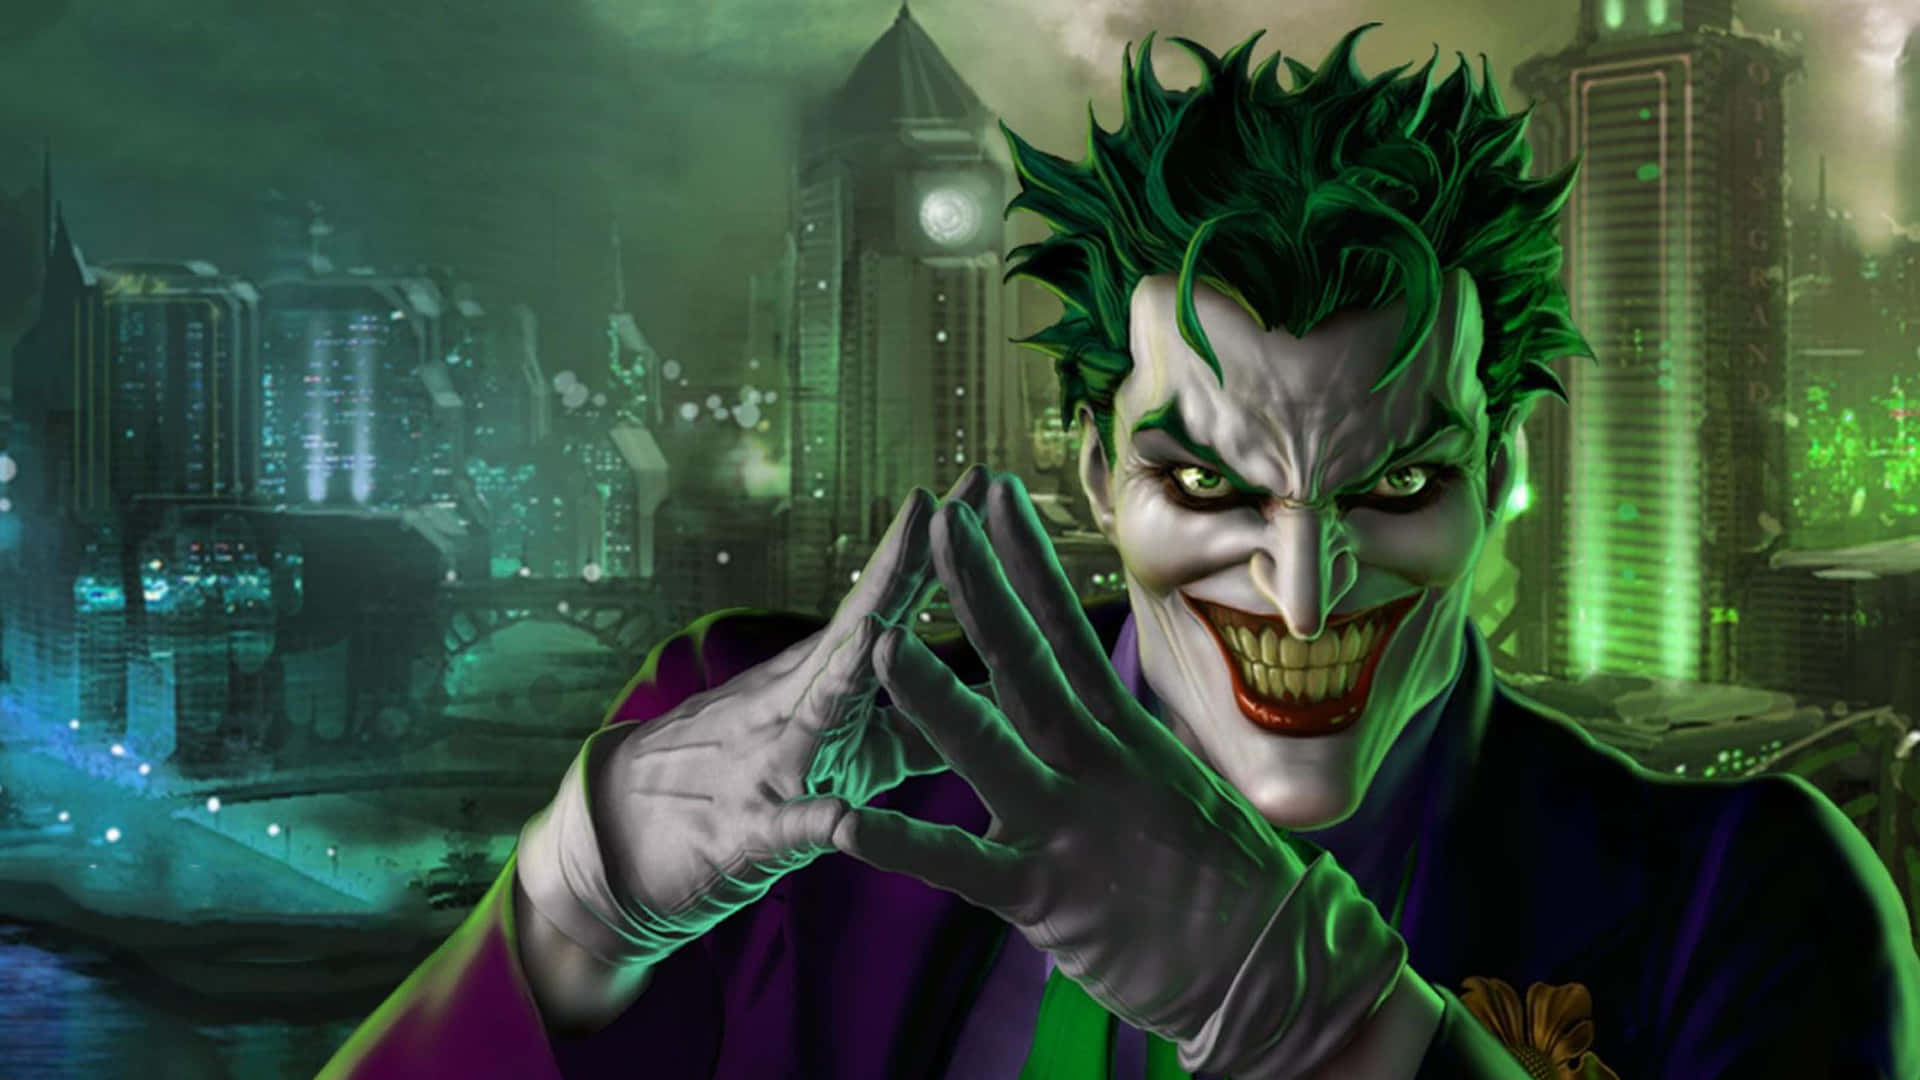 Vibrant illustration of The Joker from DC Comics Wallpaper